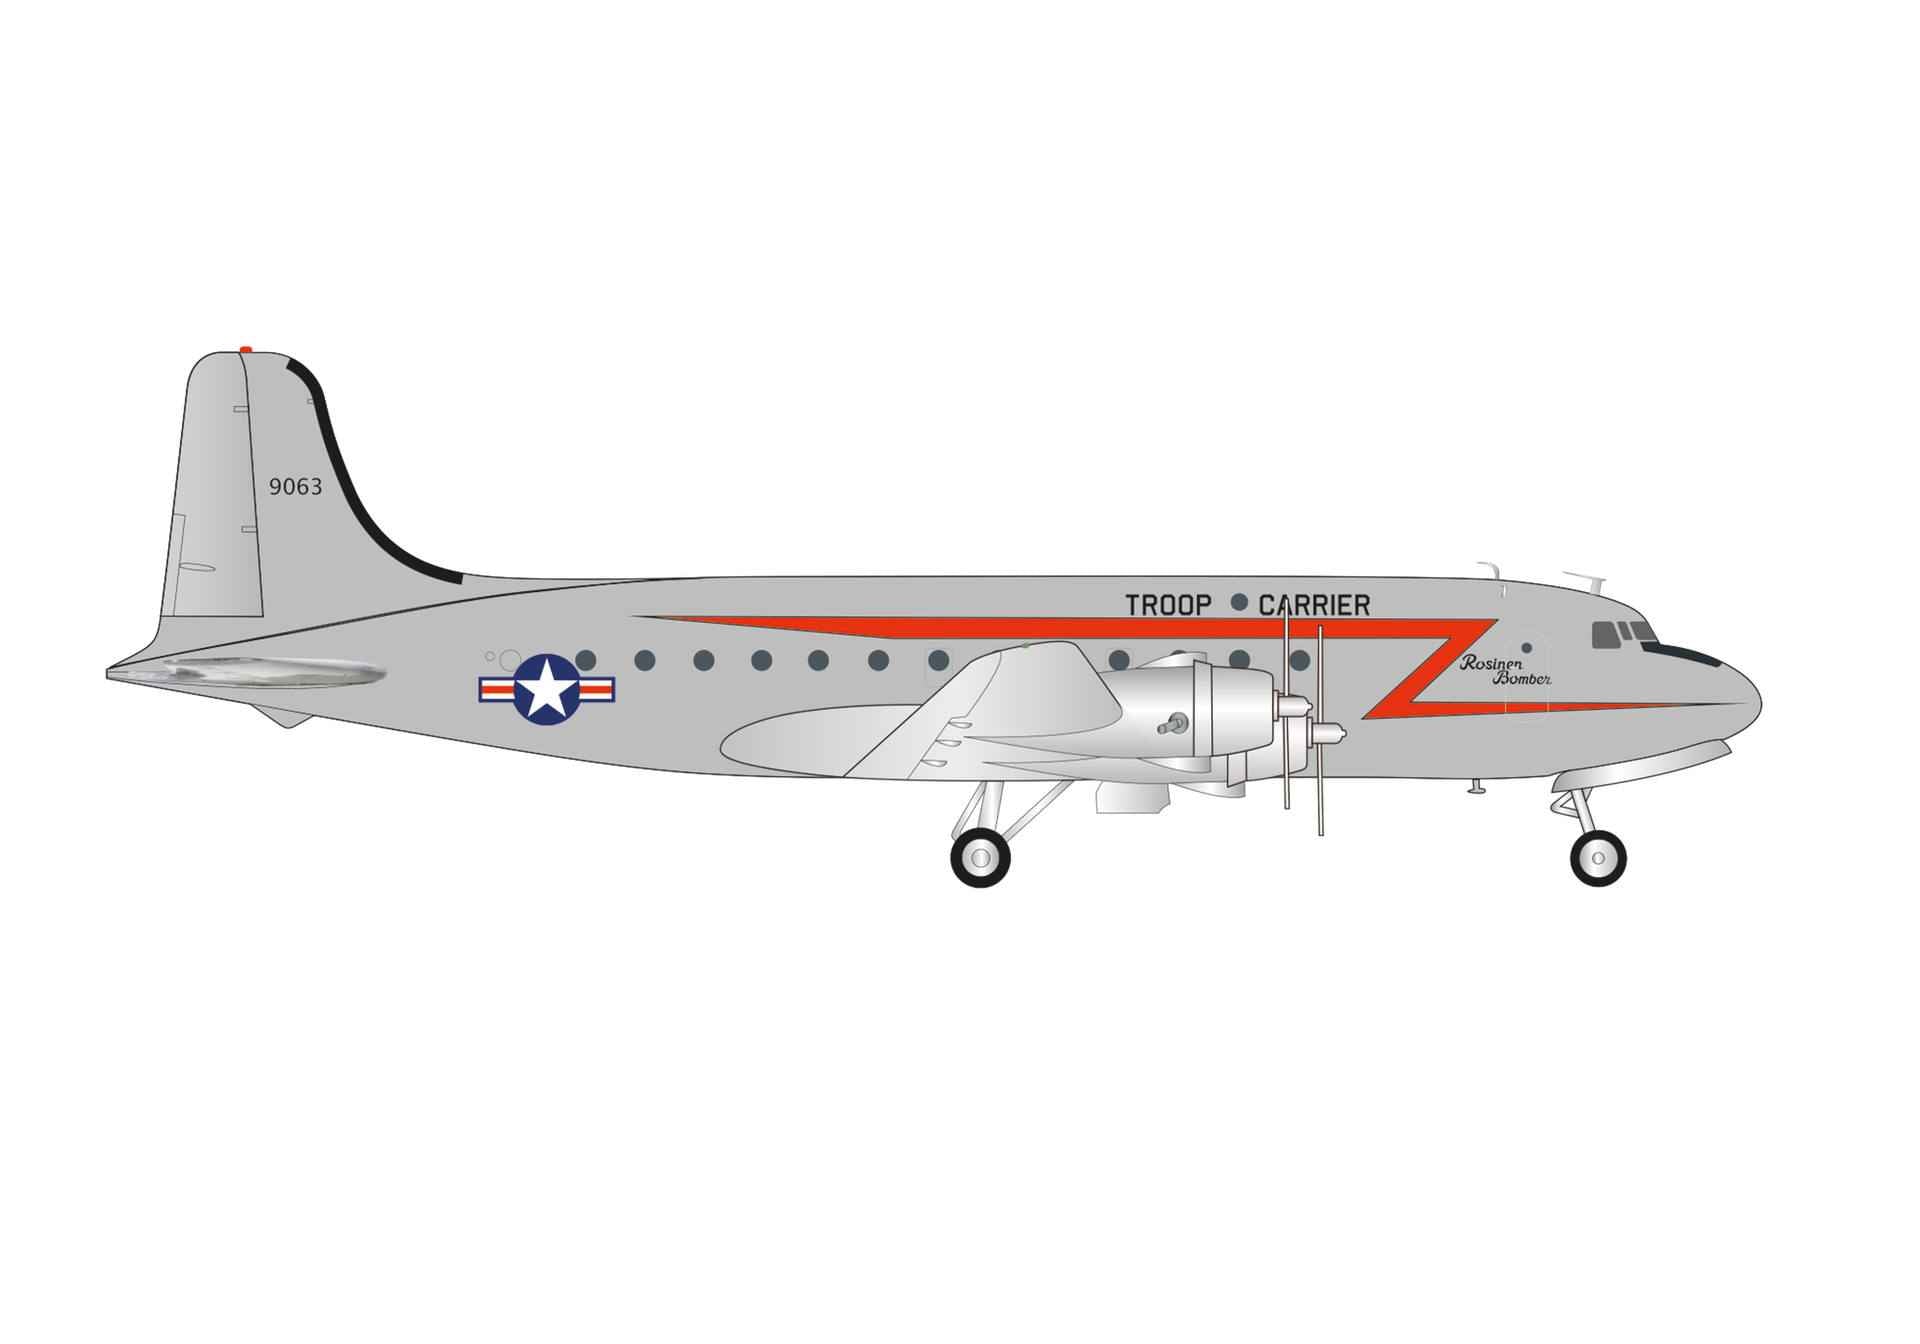 【予約商品】C-54 アメリカ空軍 “Rosinenbomber” 44-9063 1/200 (HE20240620) [573177]